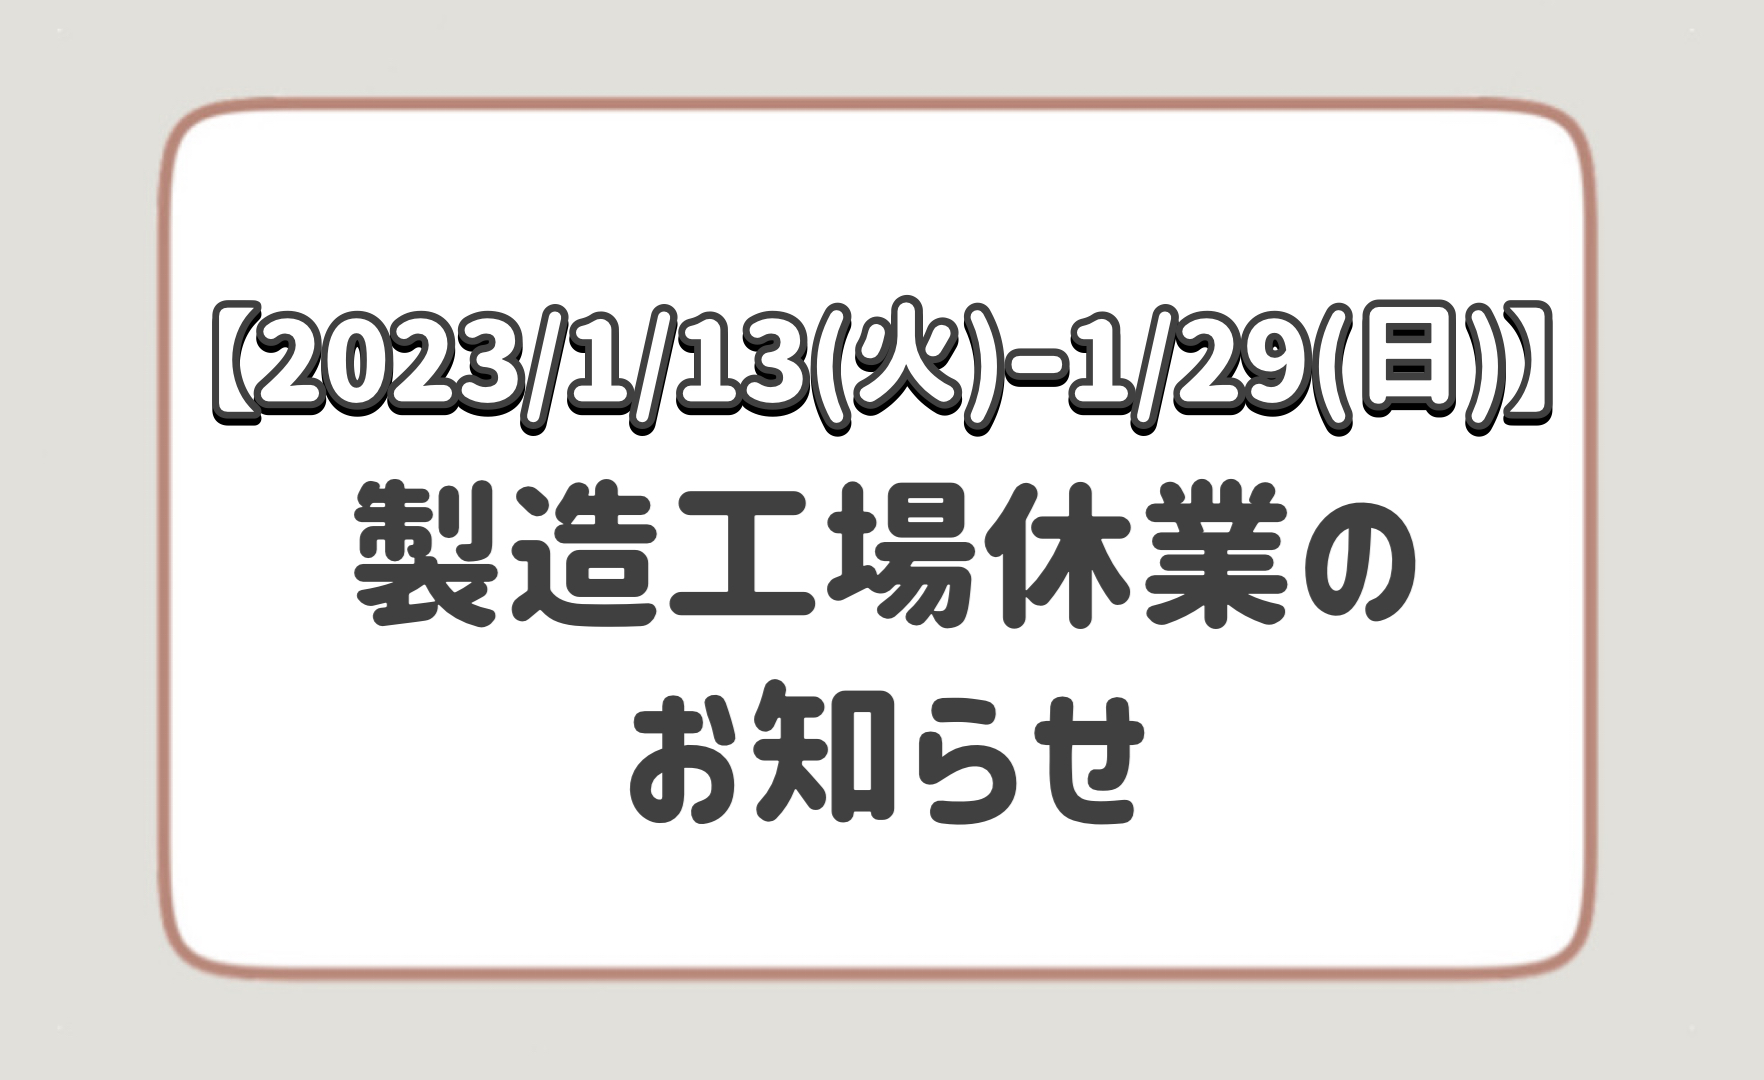 【2023 / 1/13(火)～1/29(日)】製造工場休業のお知らせ